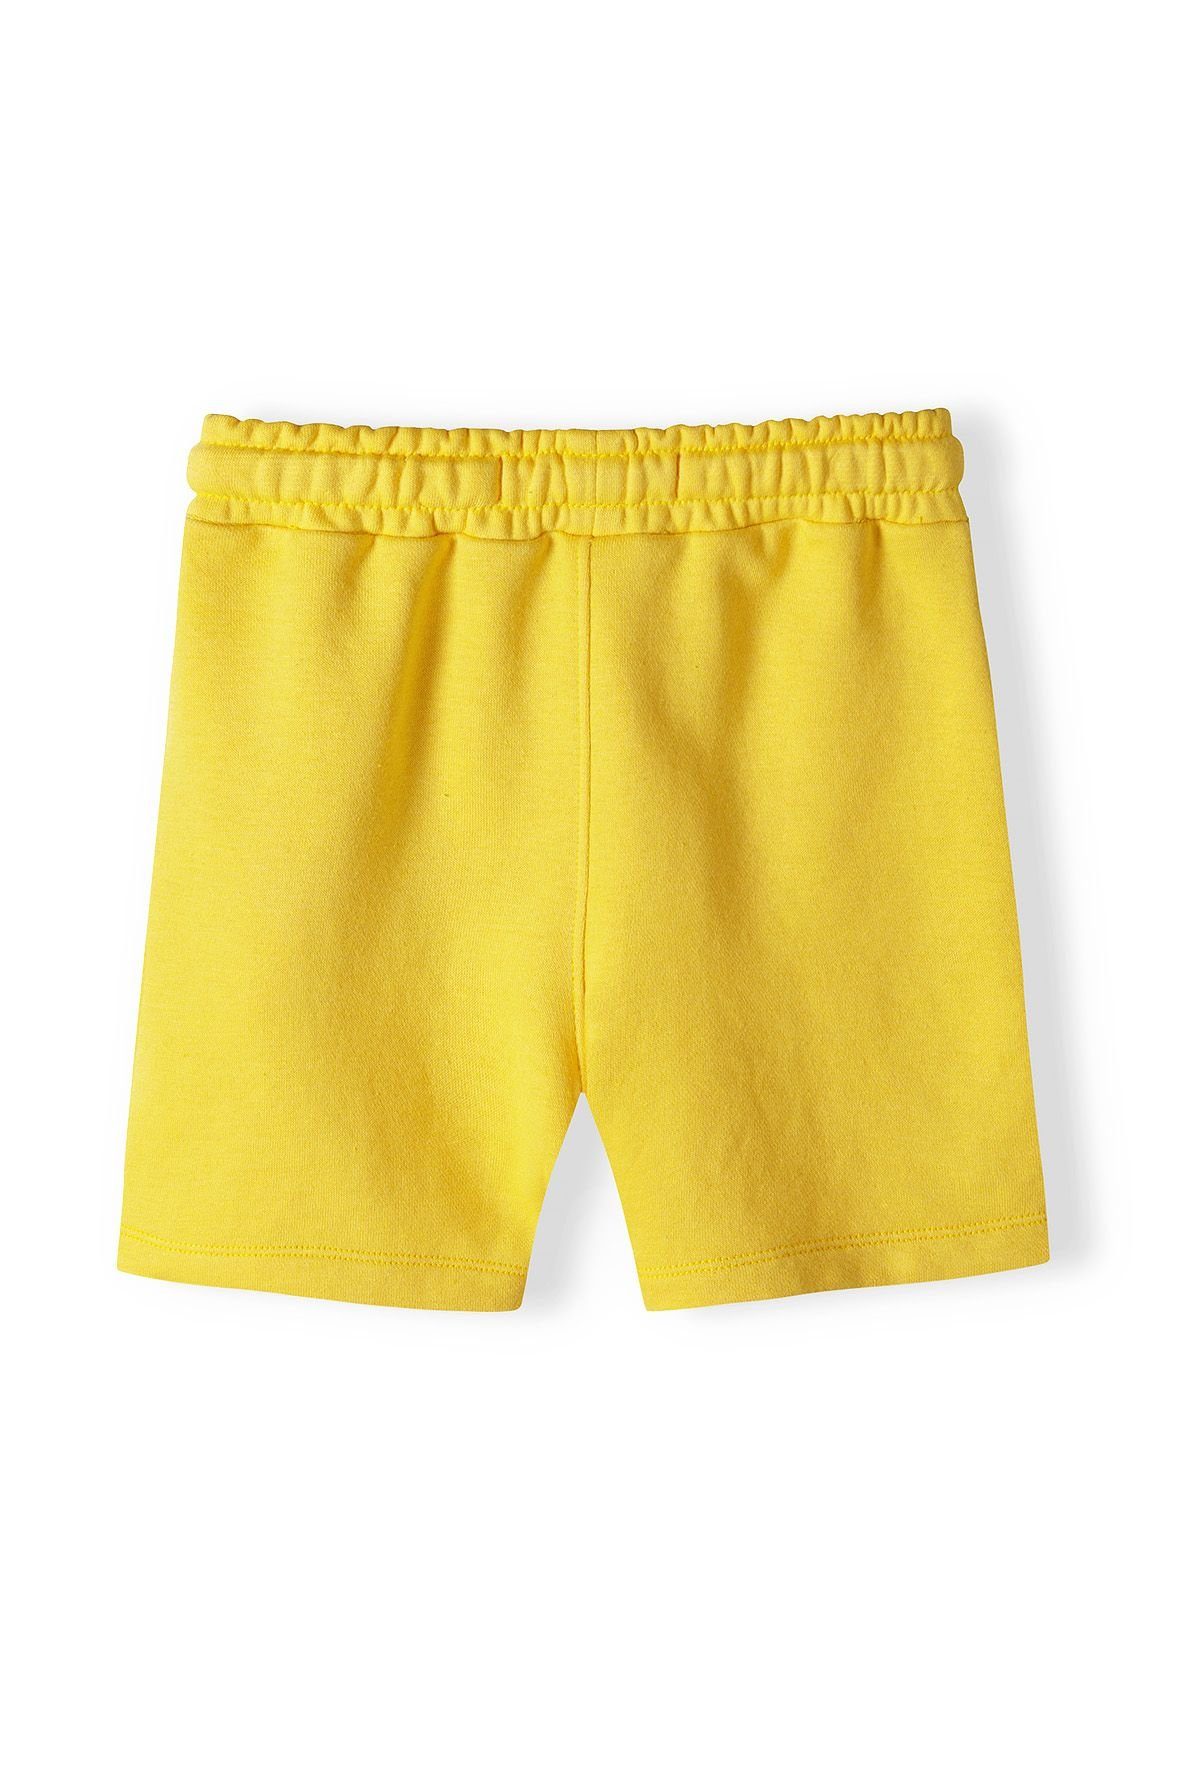 (12m-8y) Shorts Set & Gelb T-Shirt Sweatbermudas und T-Shirt MINOTI